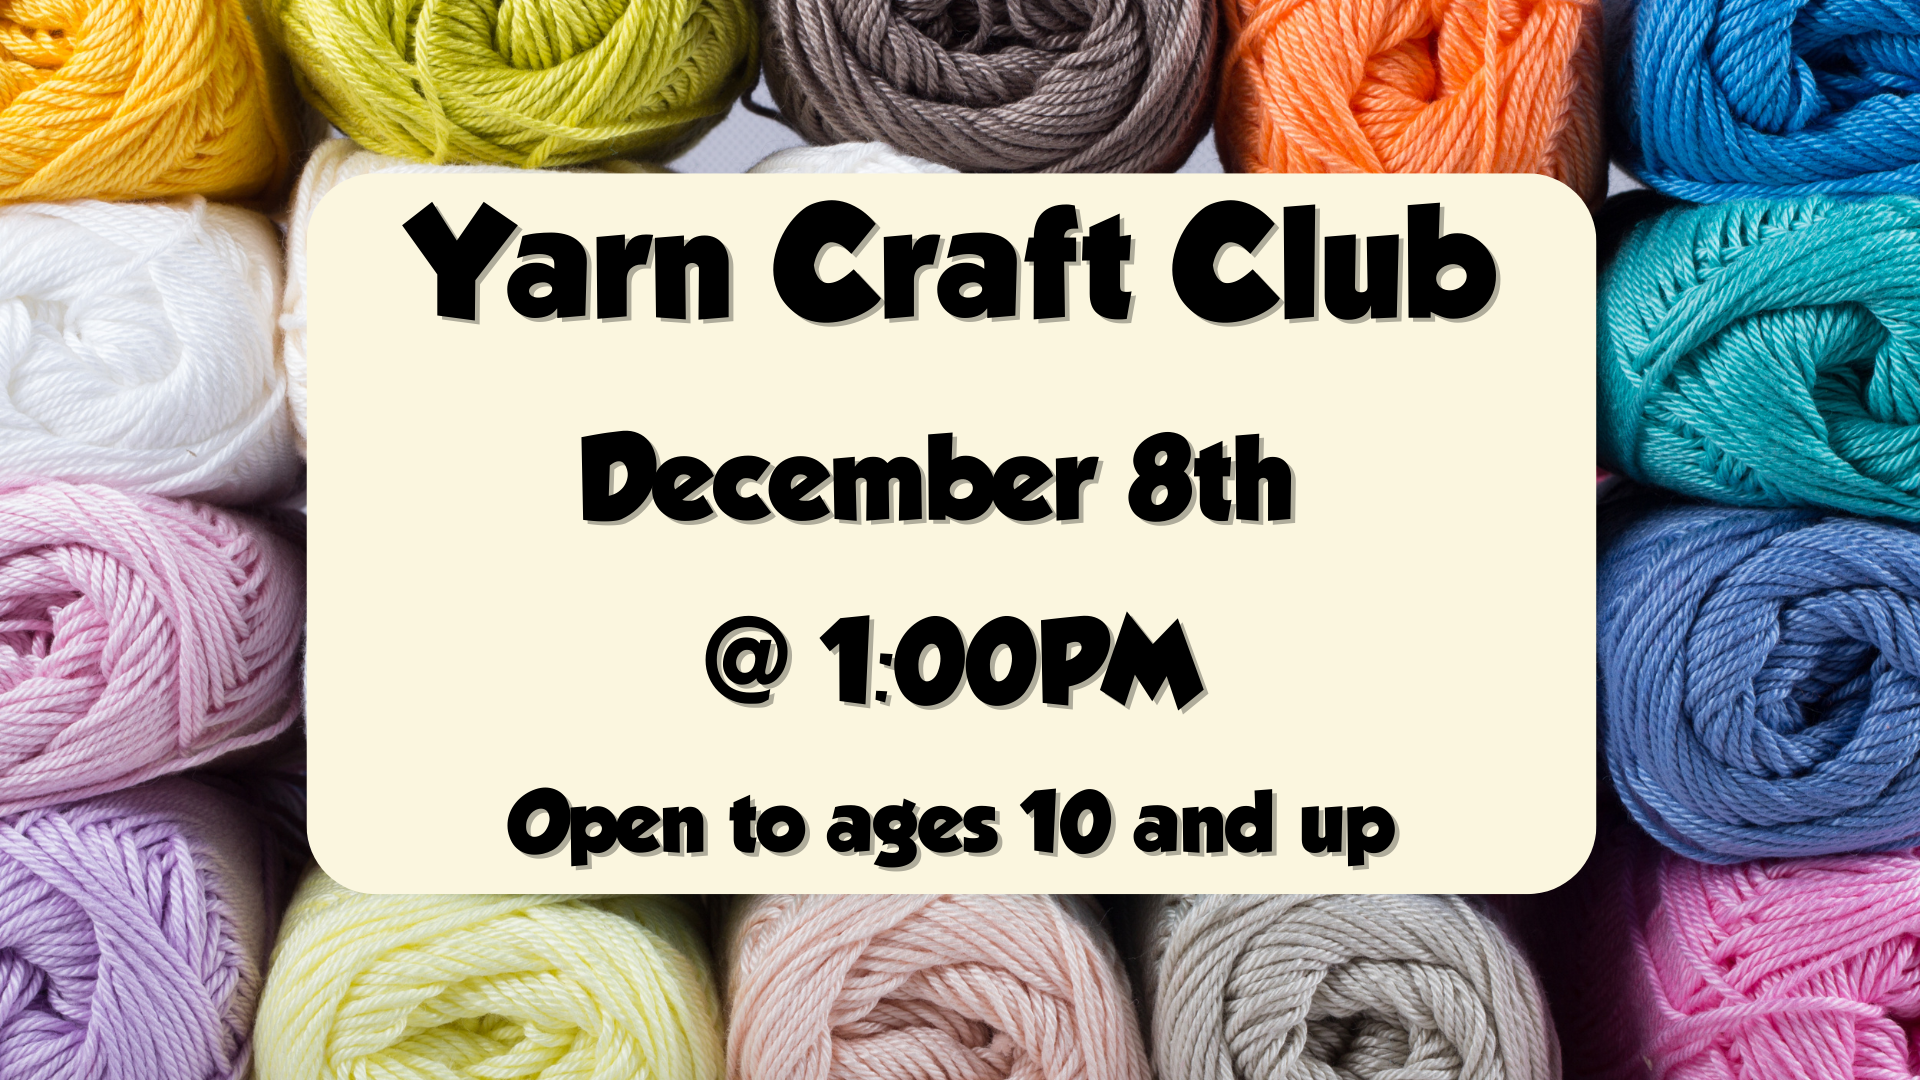 Yarn Craft Club, December 8th at 1pm